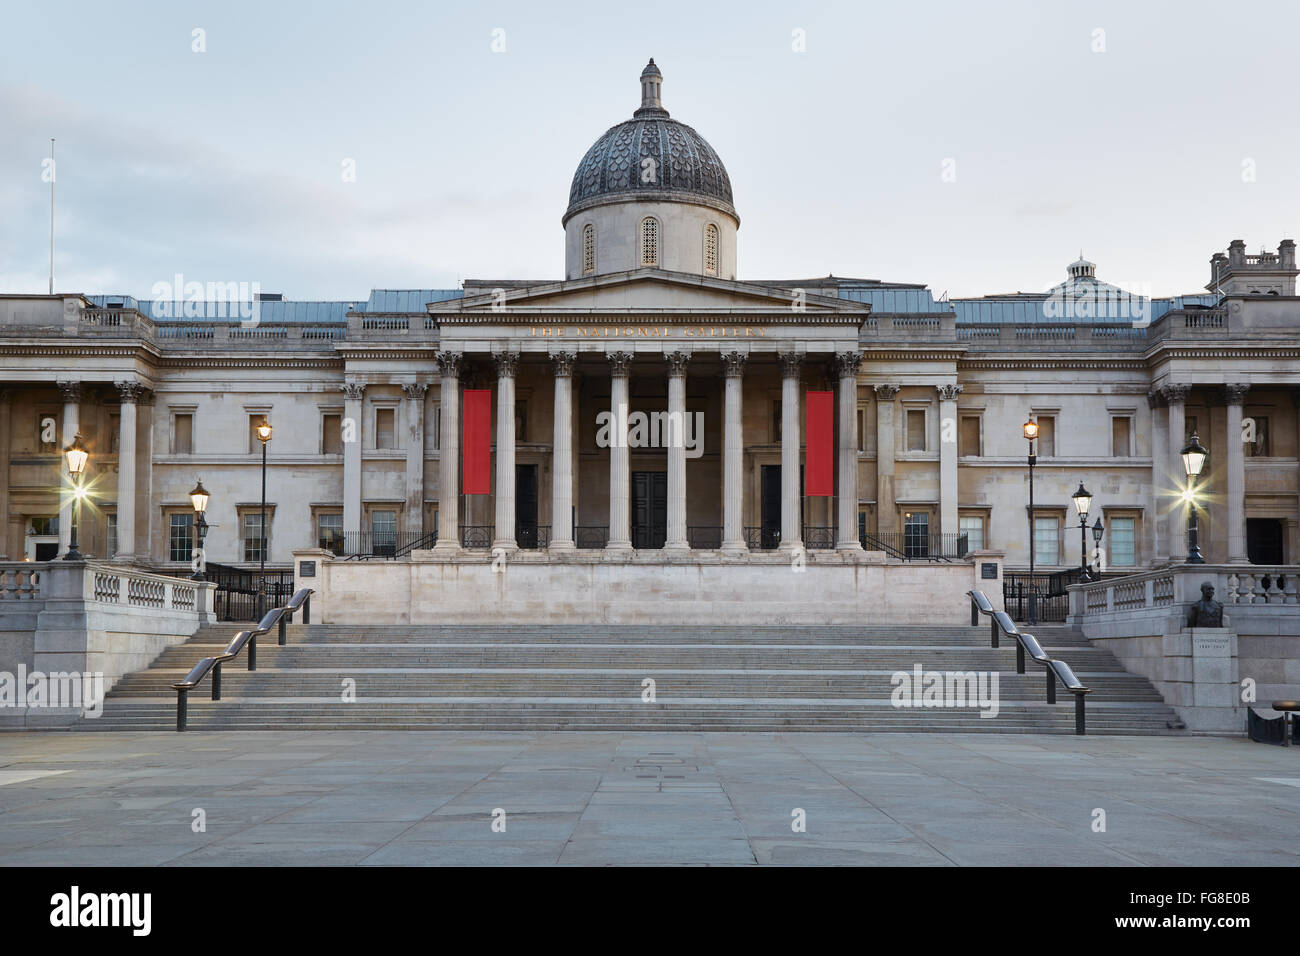 El edificio de la Galería Nacional temprano en la mañana en Londres, nadie Foto de stock